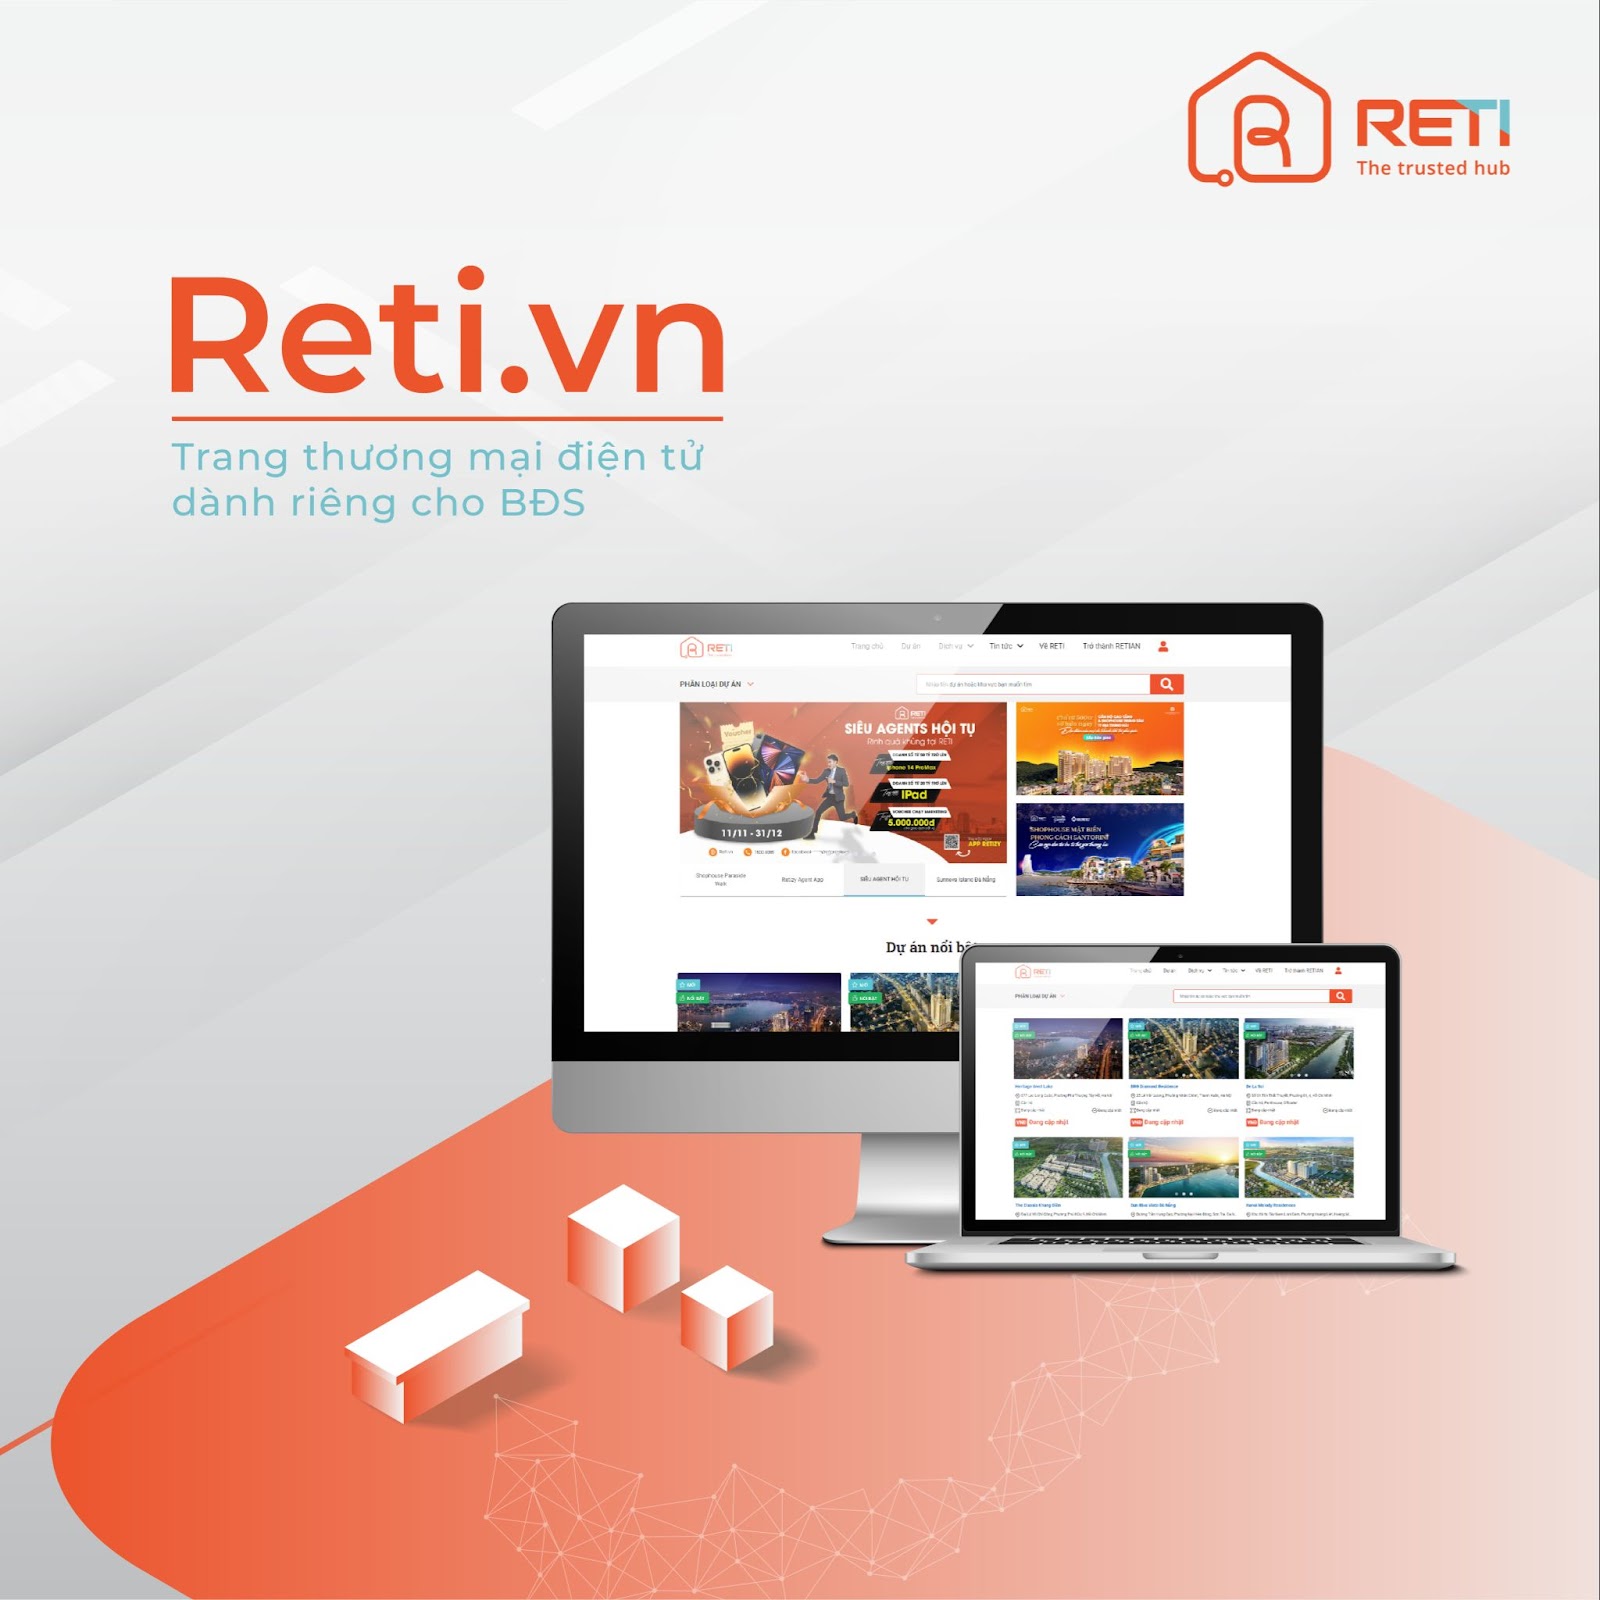 Reti.vn – Trang thương mại điện tử mang đến dịch vụ BĐS tin cậy, 100% sản phẩm được xác thực 1